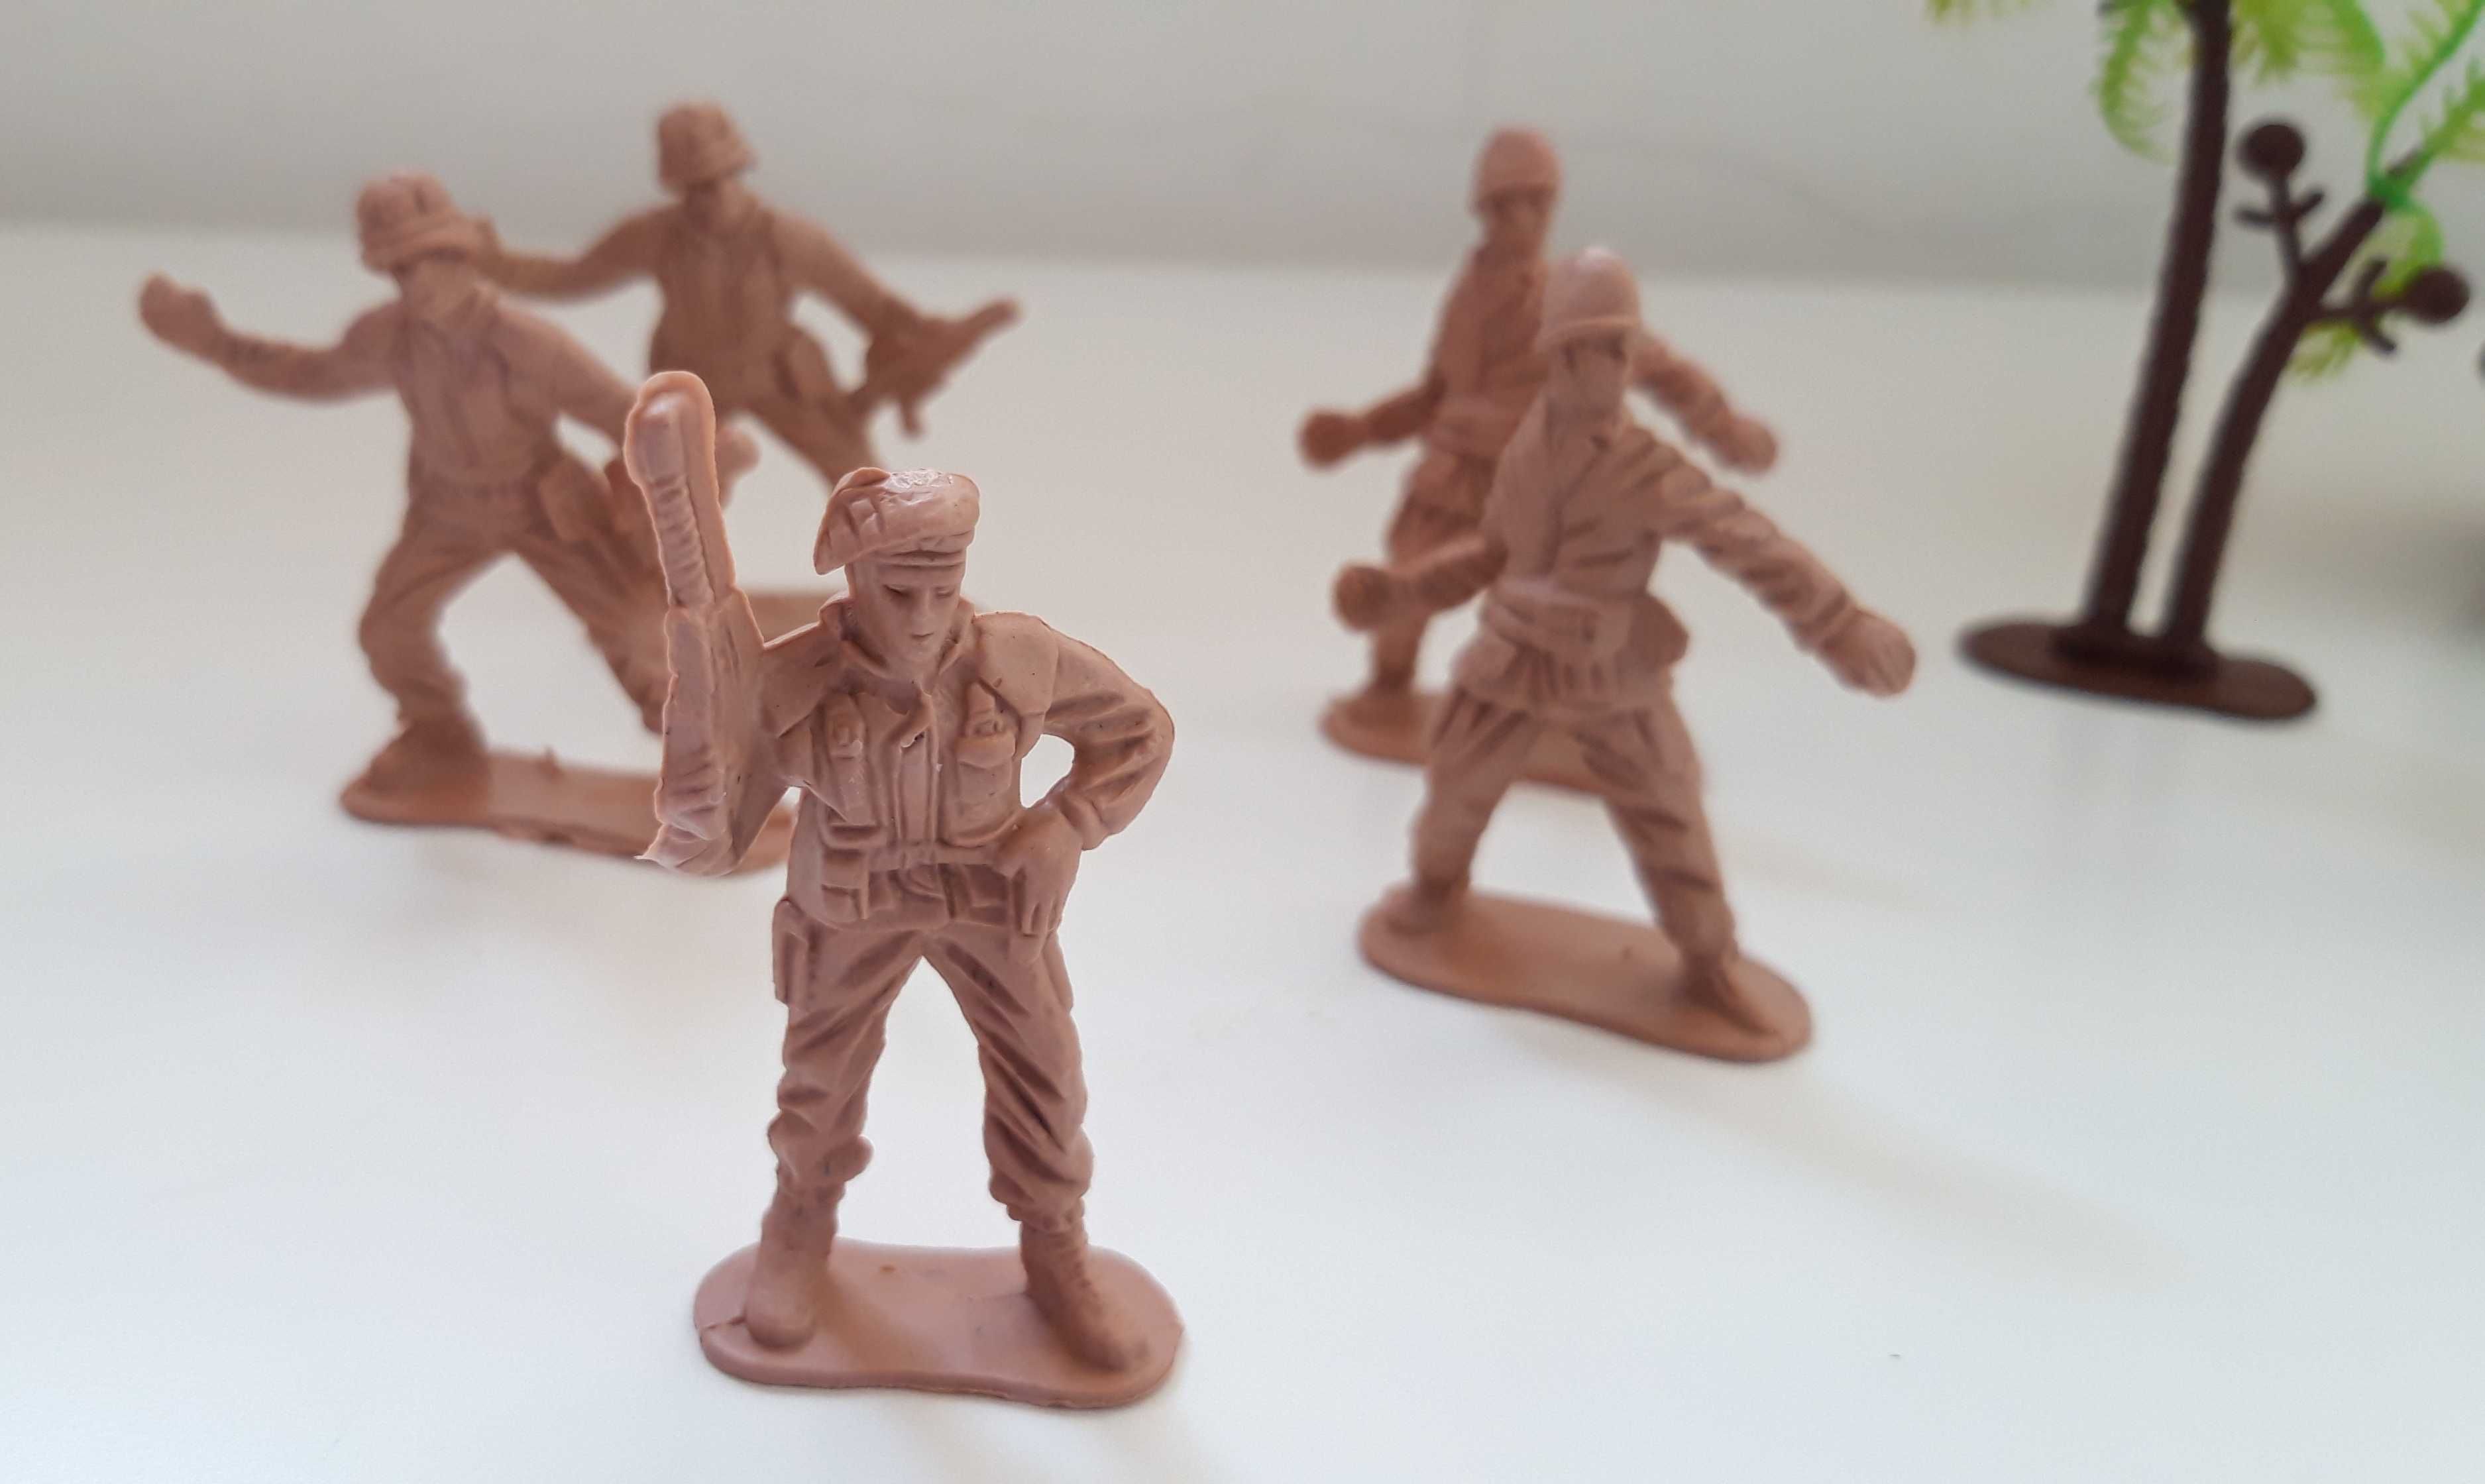 Brinquedo Vintage, pequenos soldados plásticos - Artigo NOVO e selado.